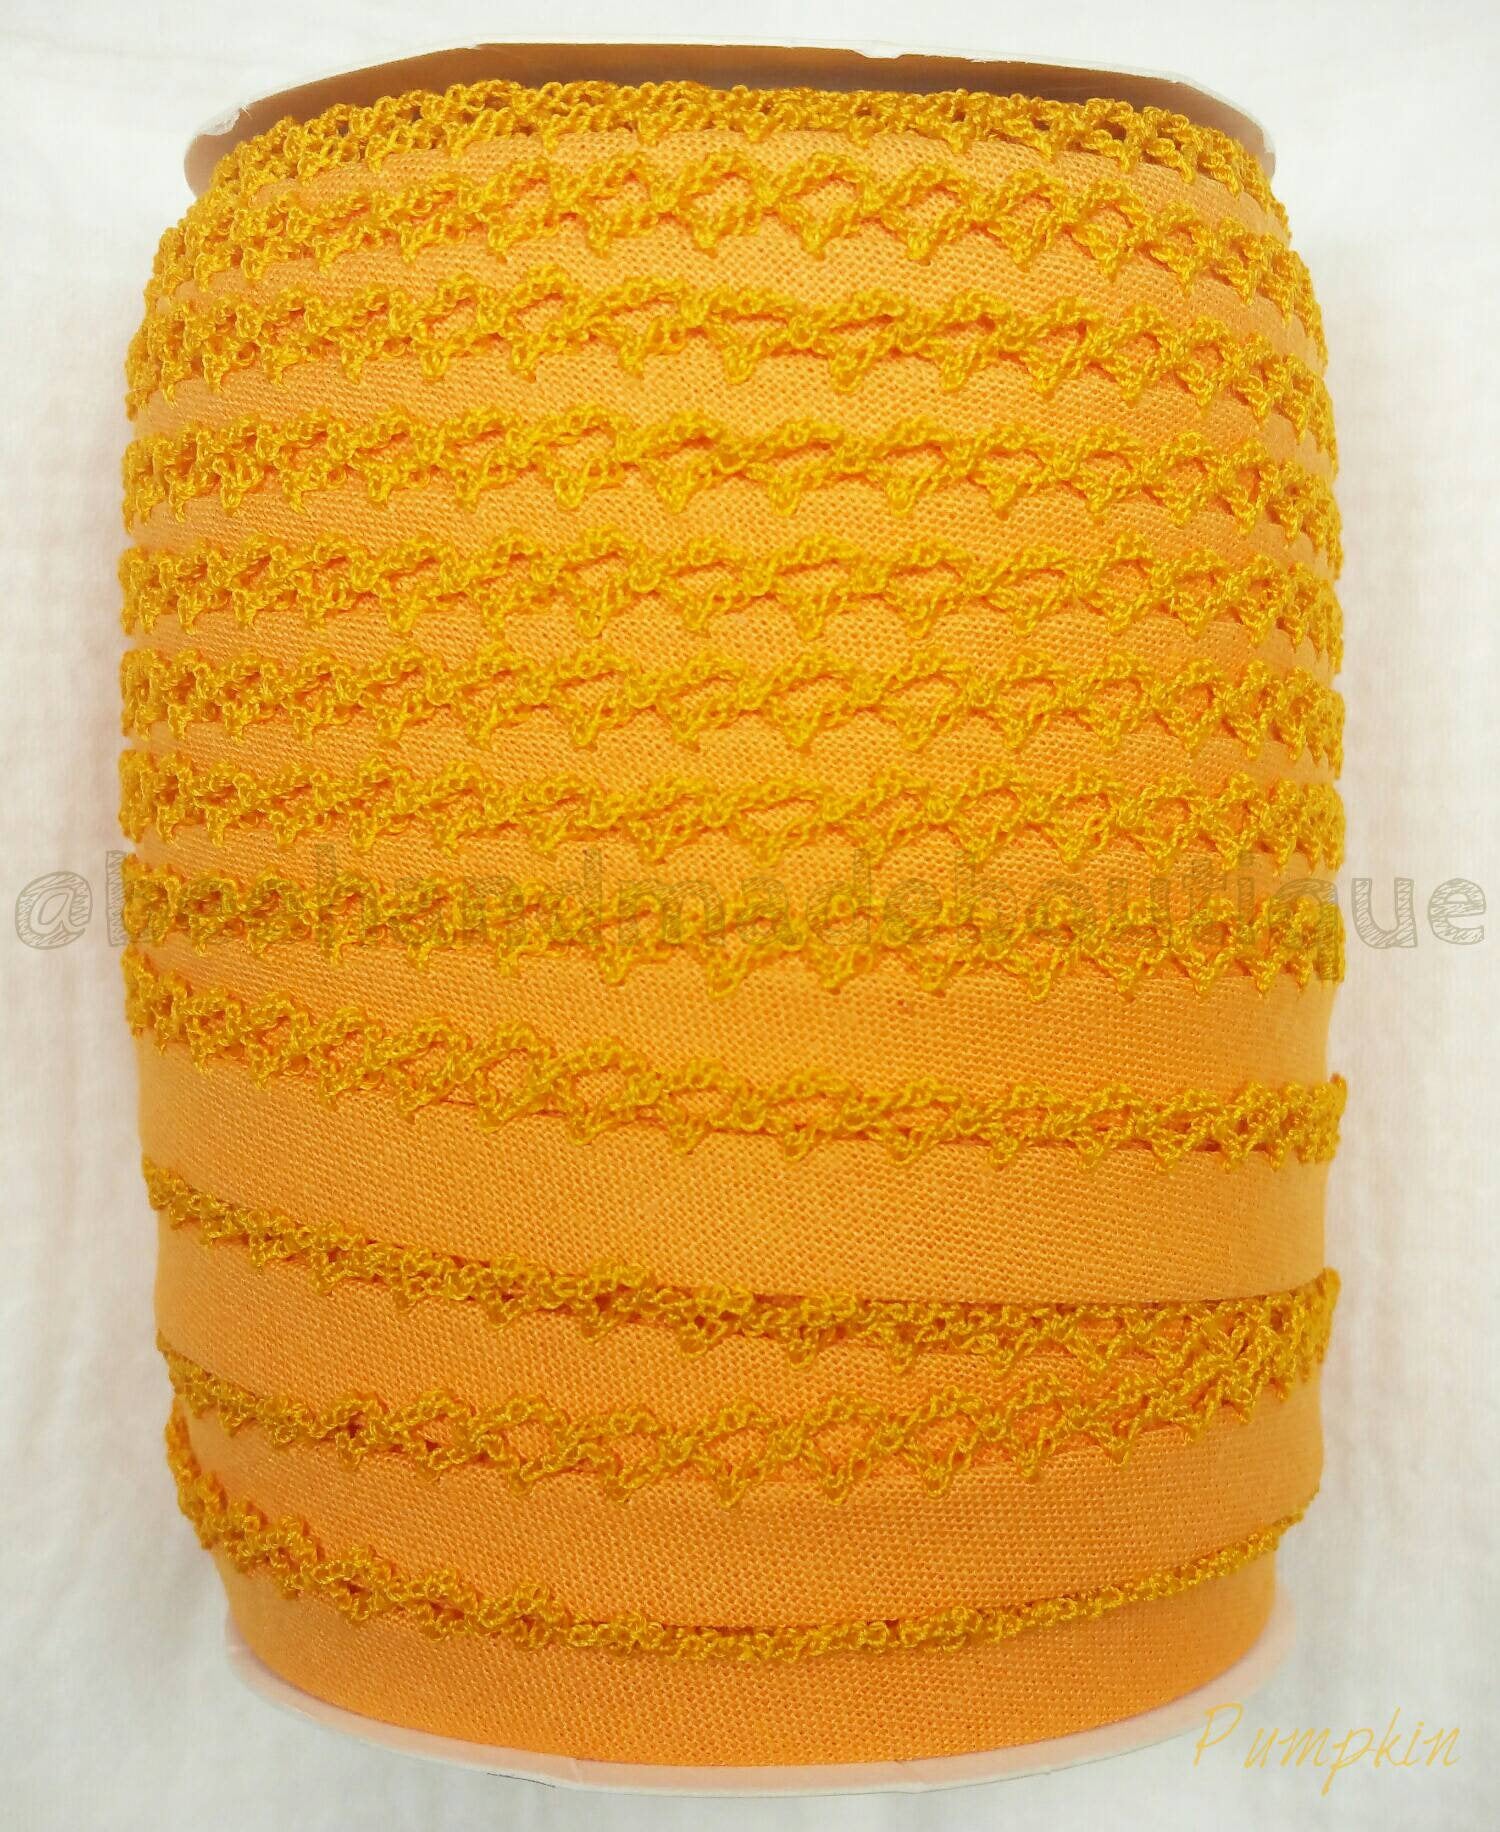 Orange Crochet Bias Tape, Double Fold Crochet Edge Bias Tape, Picot Edge Bias Tape, Quilt Binding, PUMPKIN Crochet Bias Tape, Bias Binding